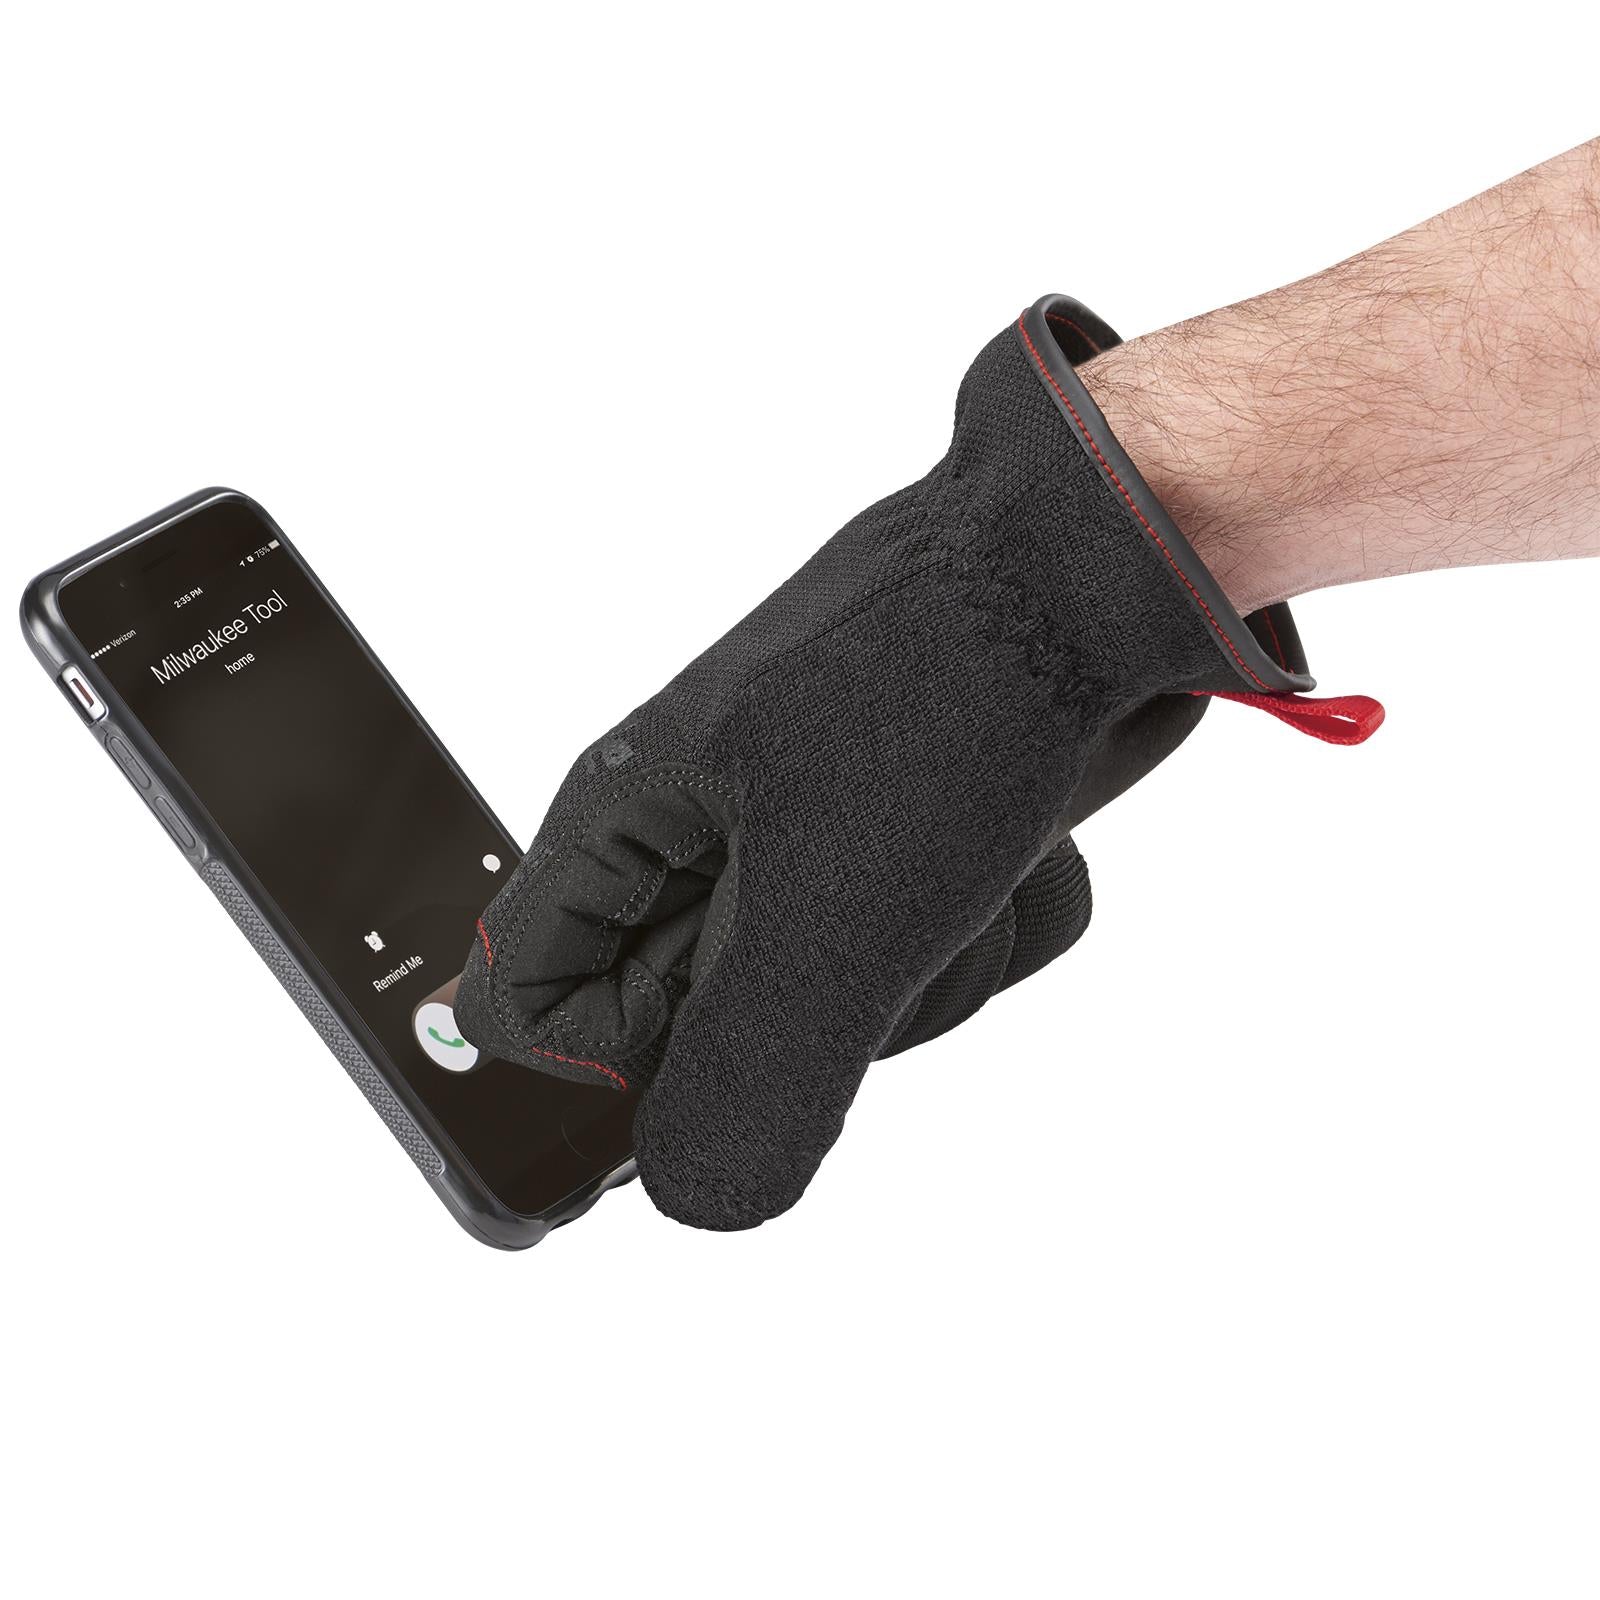 Milwaukee Safety Gloves Free Flex Work Glove Size 8 / M Medium